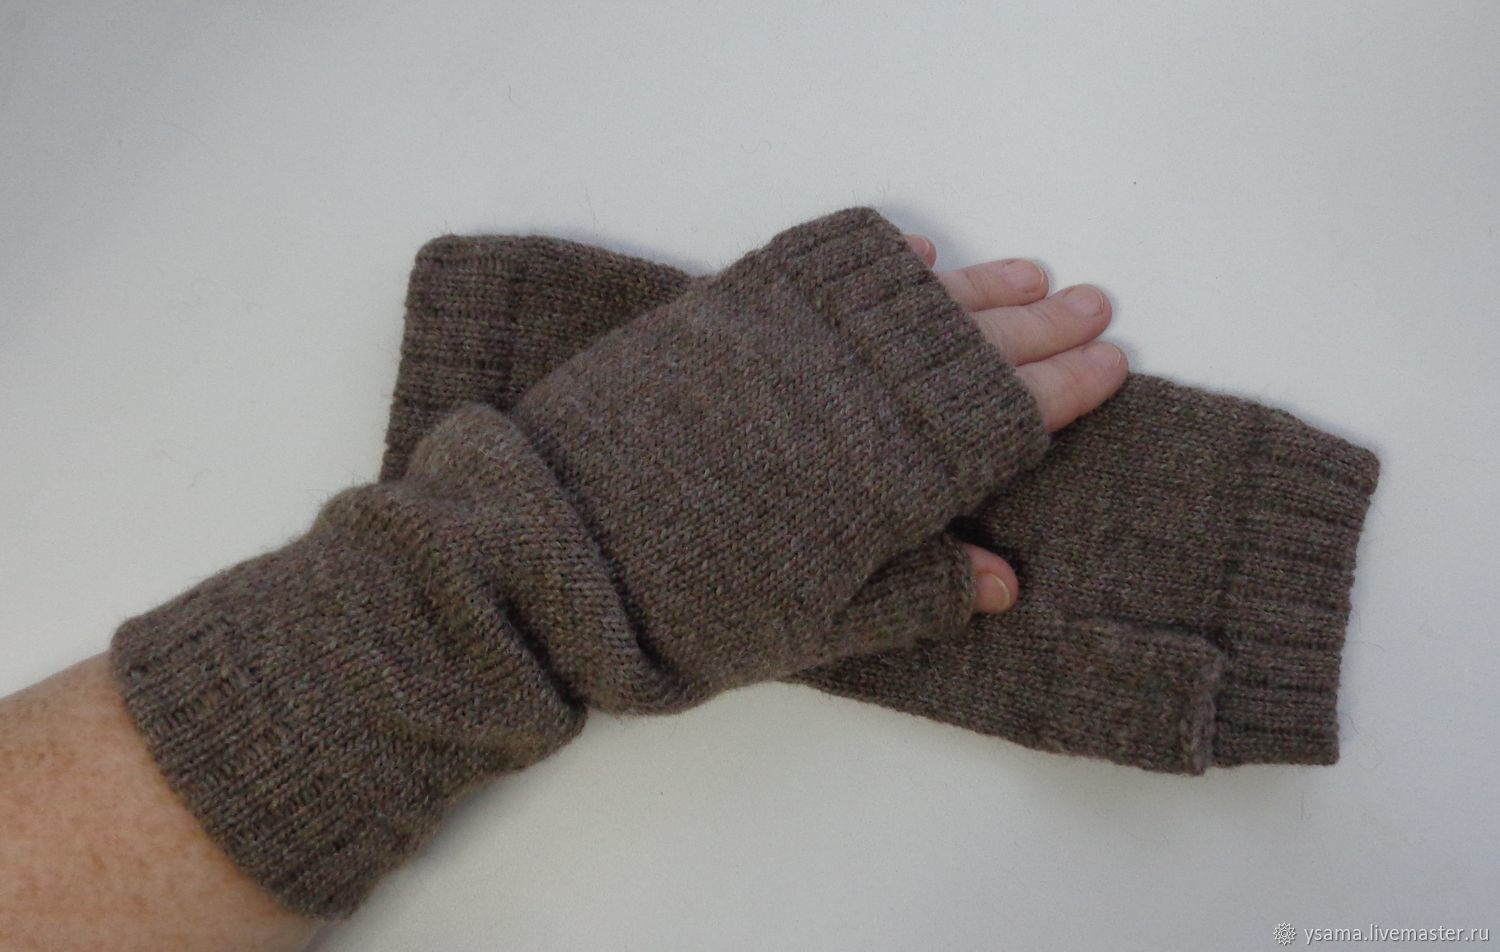 Mens Fingerless Gloves Knitting Pattern Micah Alpaca Long Fingerless Gloves Mens Womens Shop Online On Livemaster With Shipping Edx3jcom Kotlas